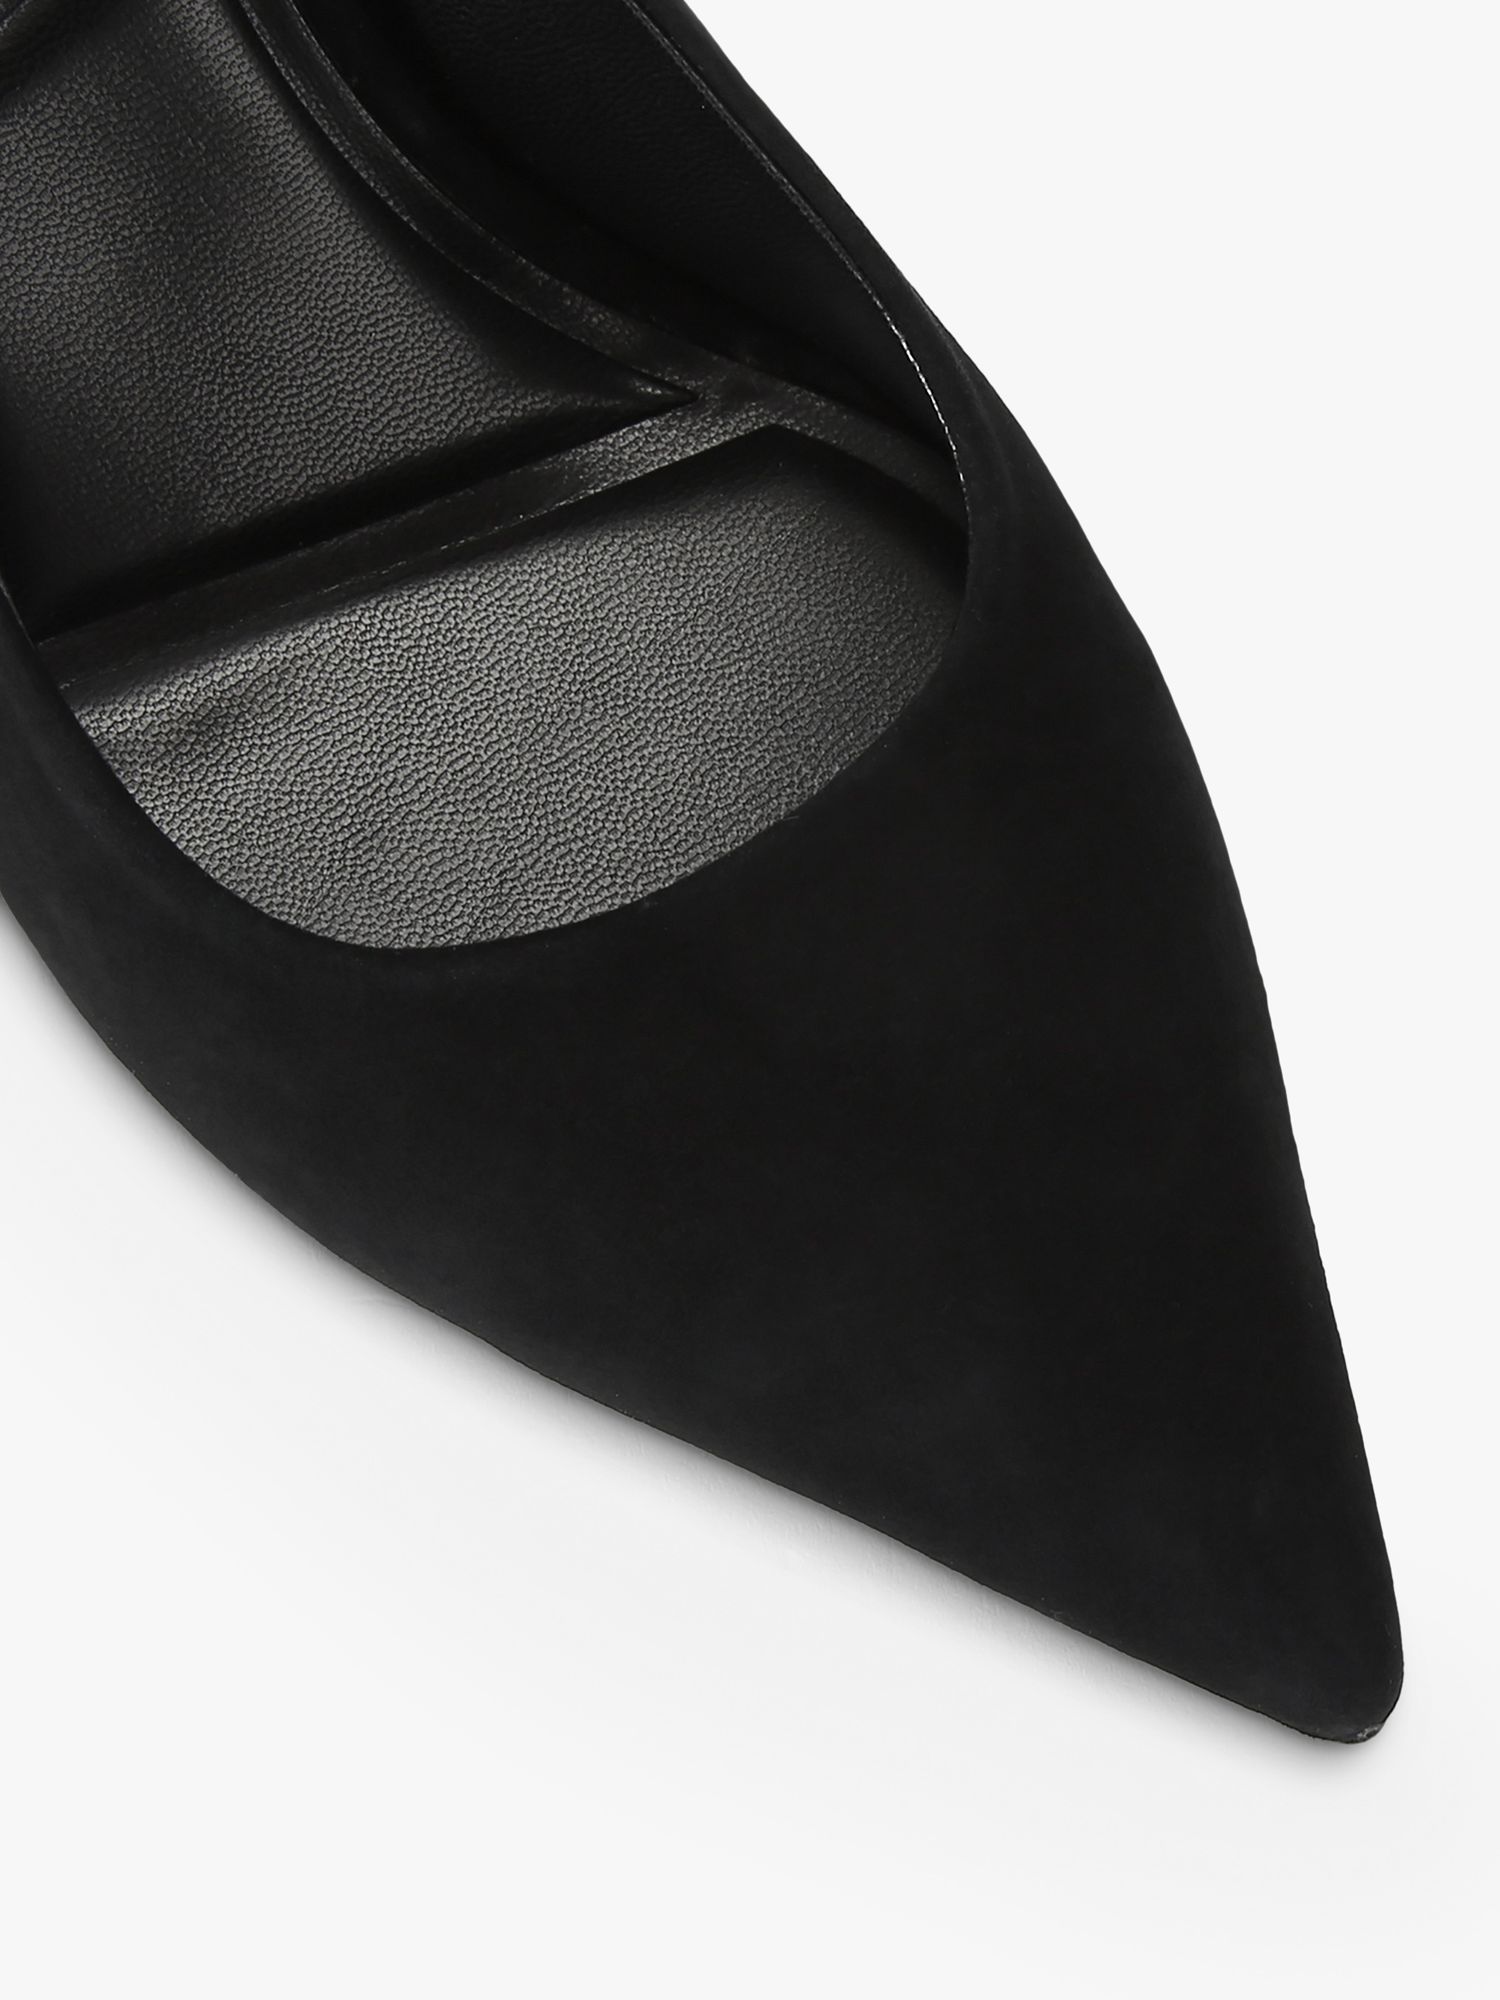 Carvela Symmetry Sling Back Court Shoes, Black at John Lewis & Partners